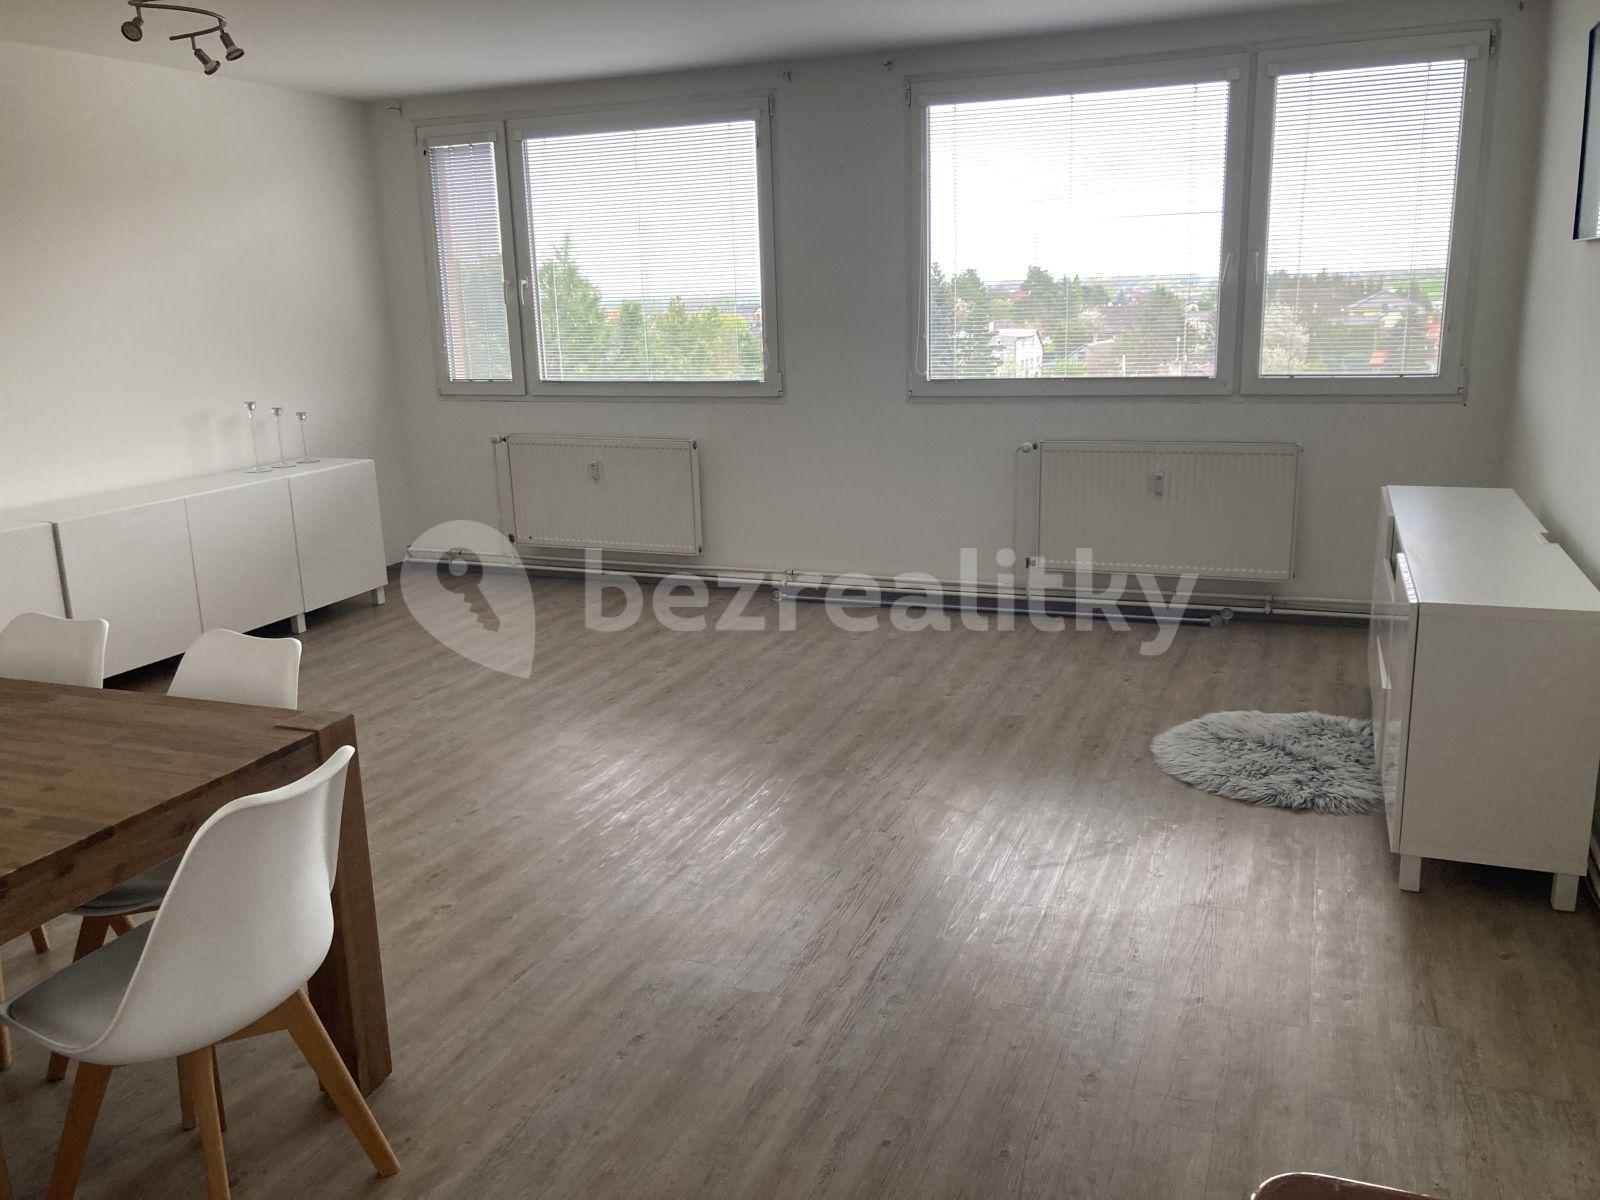 2 bedroom with open-plan kitchen flat to rent, 83 m², 5. května, Měšice, Středočeský Region